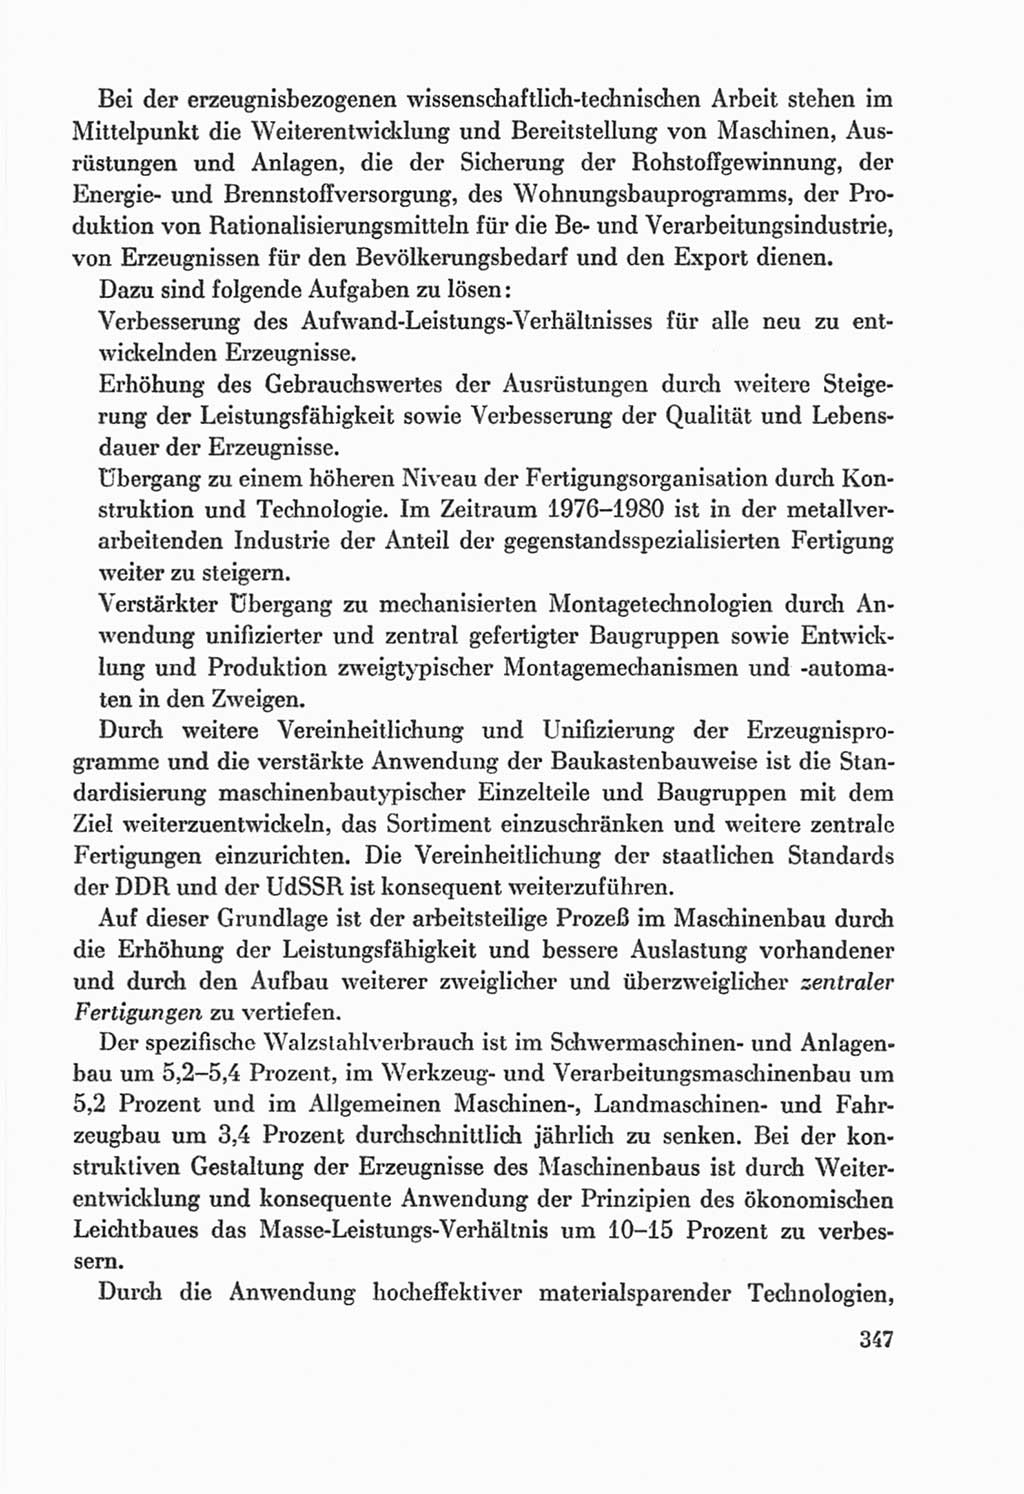 Protokoll der Verhandlungen des Ⅸ. Parteitages der Sozialistischen Einheitspartei Deutschlands (SED) [Deutsche Demokratische Republik (DDR)] 1976, Band 2, Seite 347 (Prot. Verh. Ⅸ. PT SED DDR 1976, Bd. 2, S. 347)